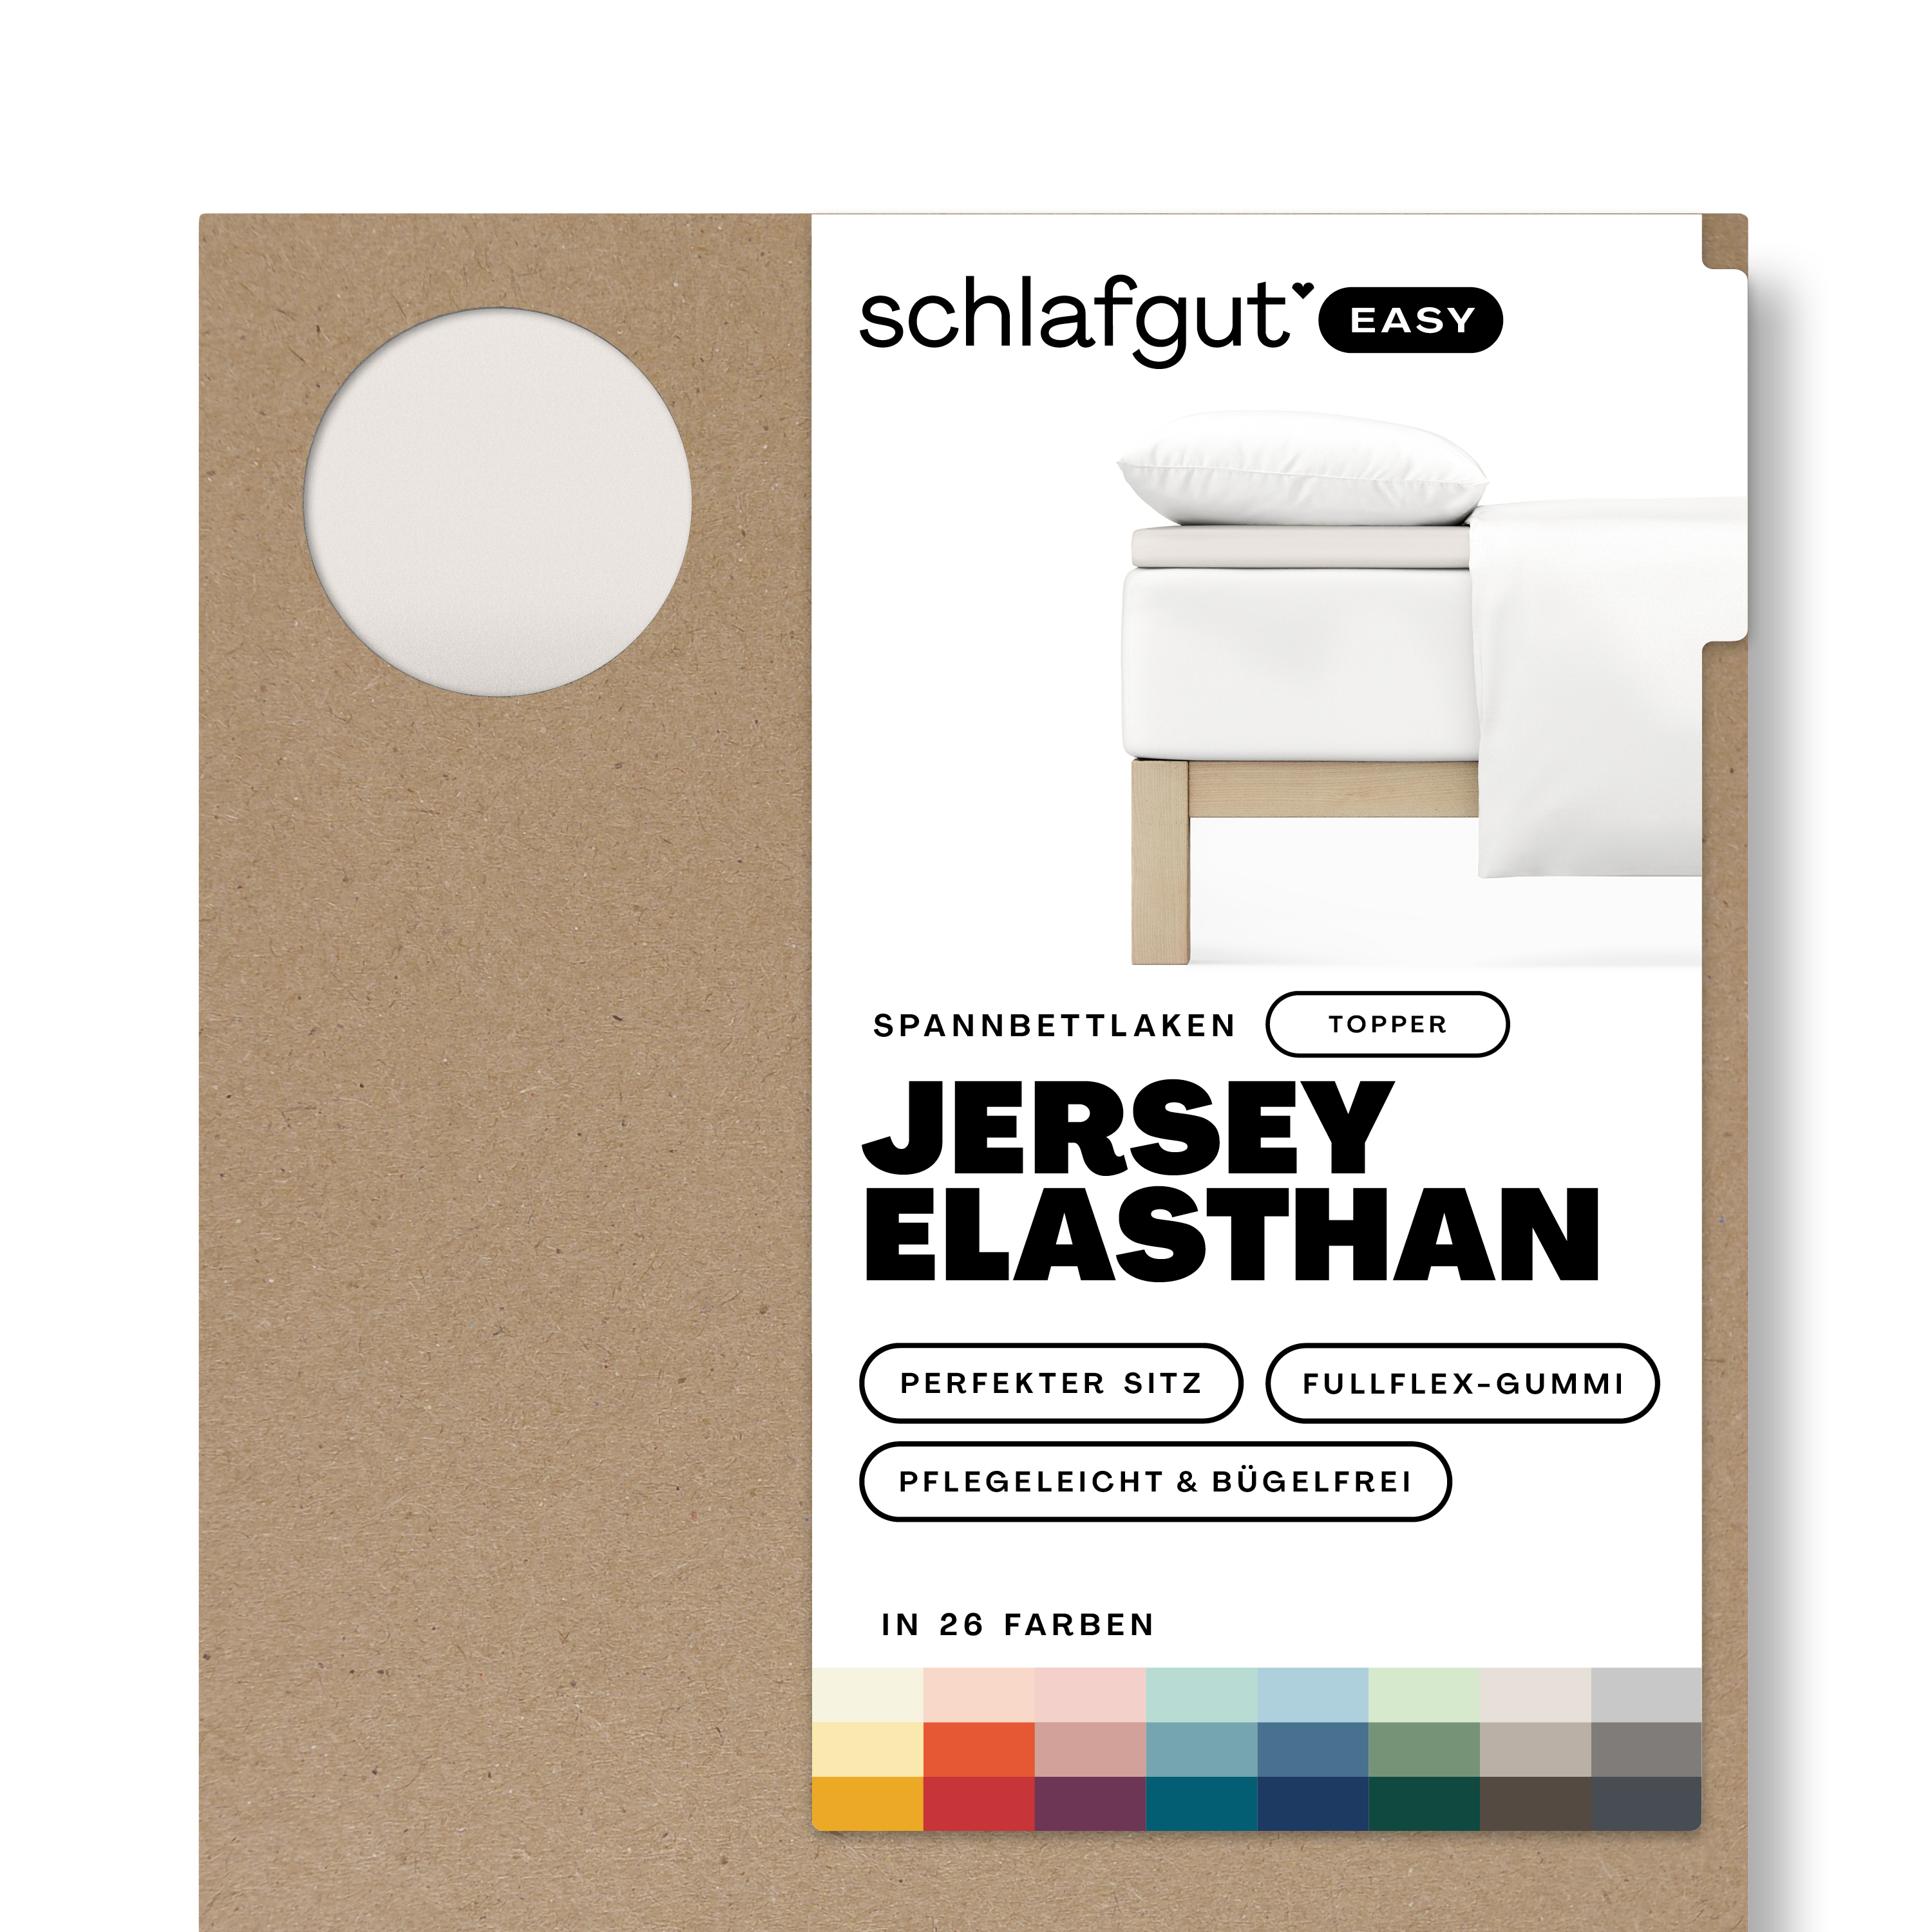 Das Produktbild vom Spannbettlaken der Reihe Easy Elasthan Topper in Farbe sand light von Schlafgut